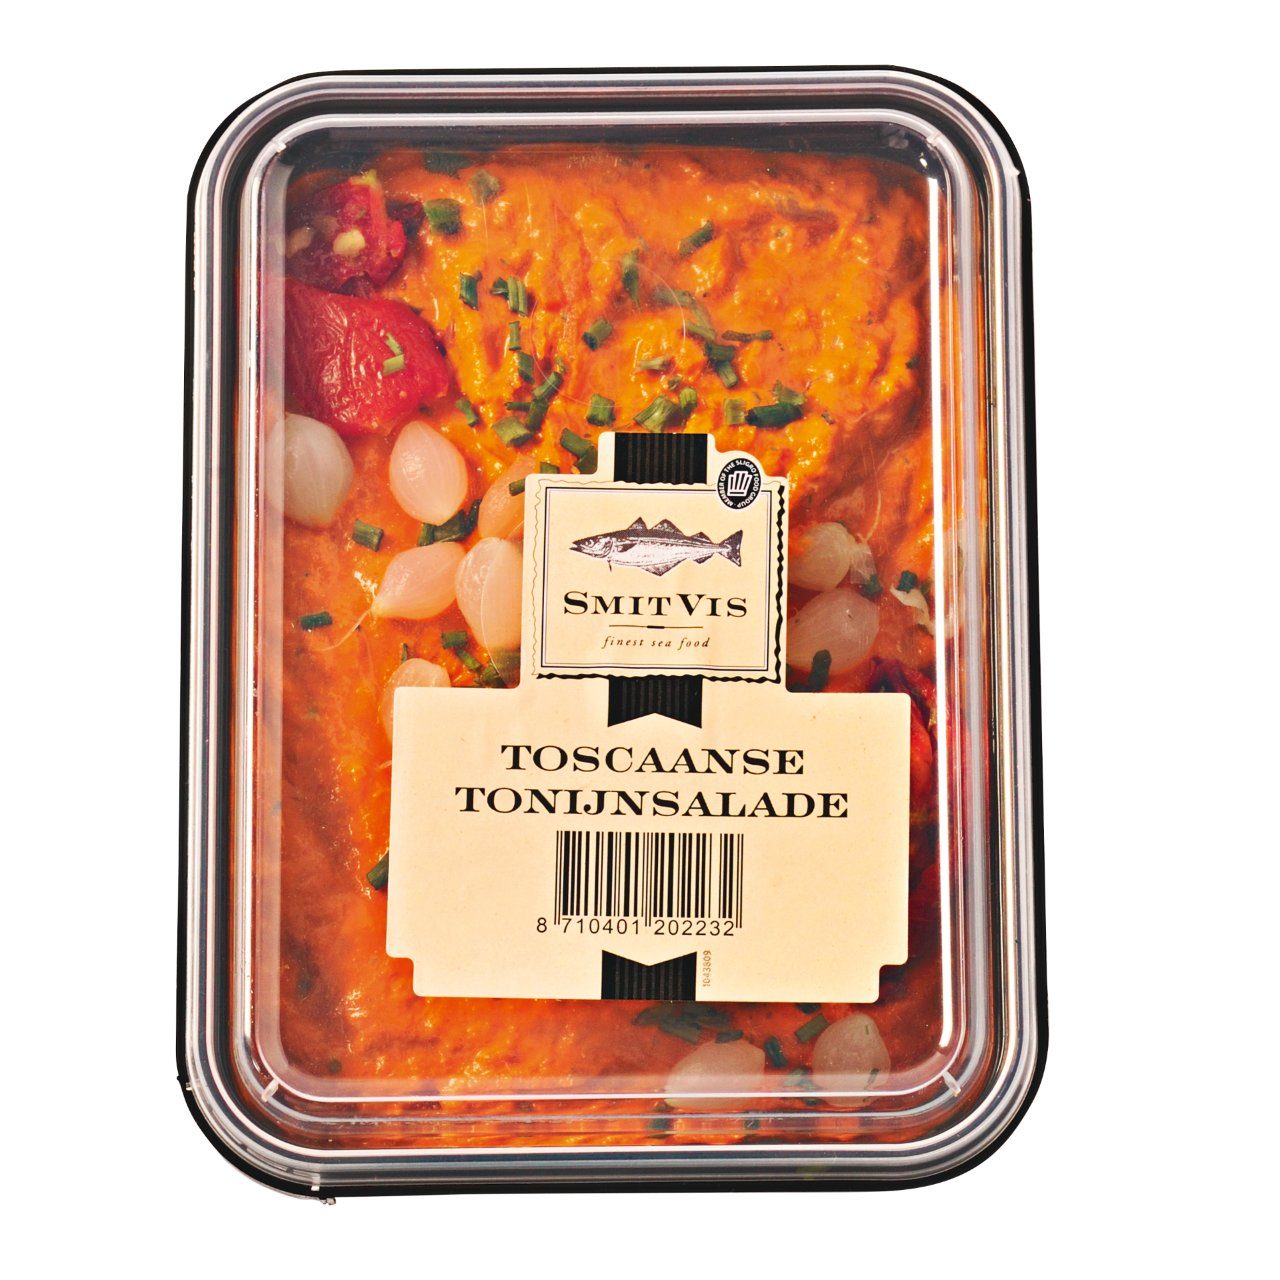 Tonijnsalade Toscaans